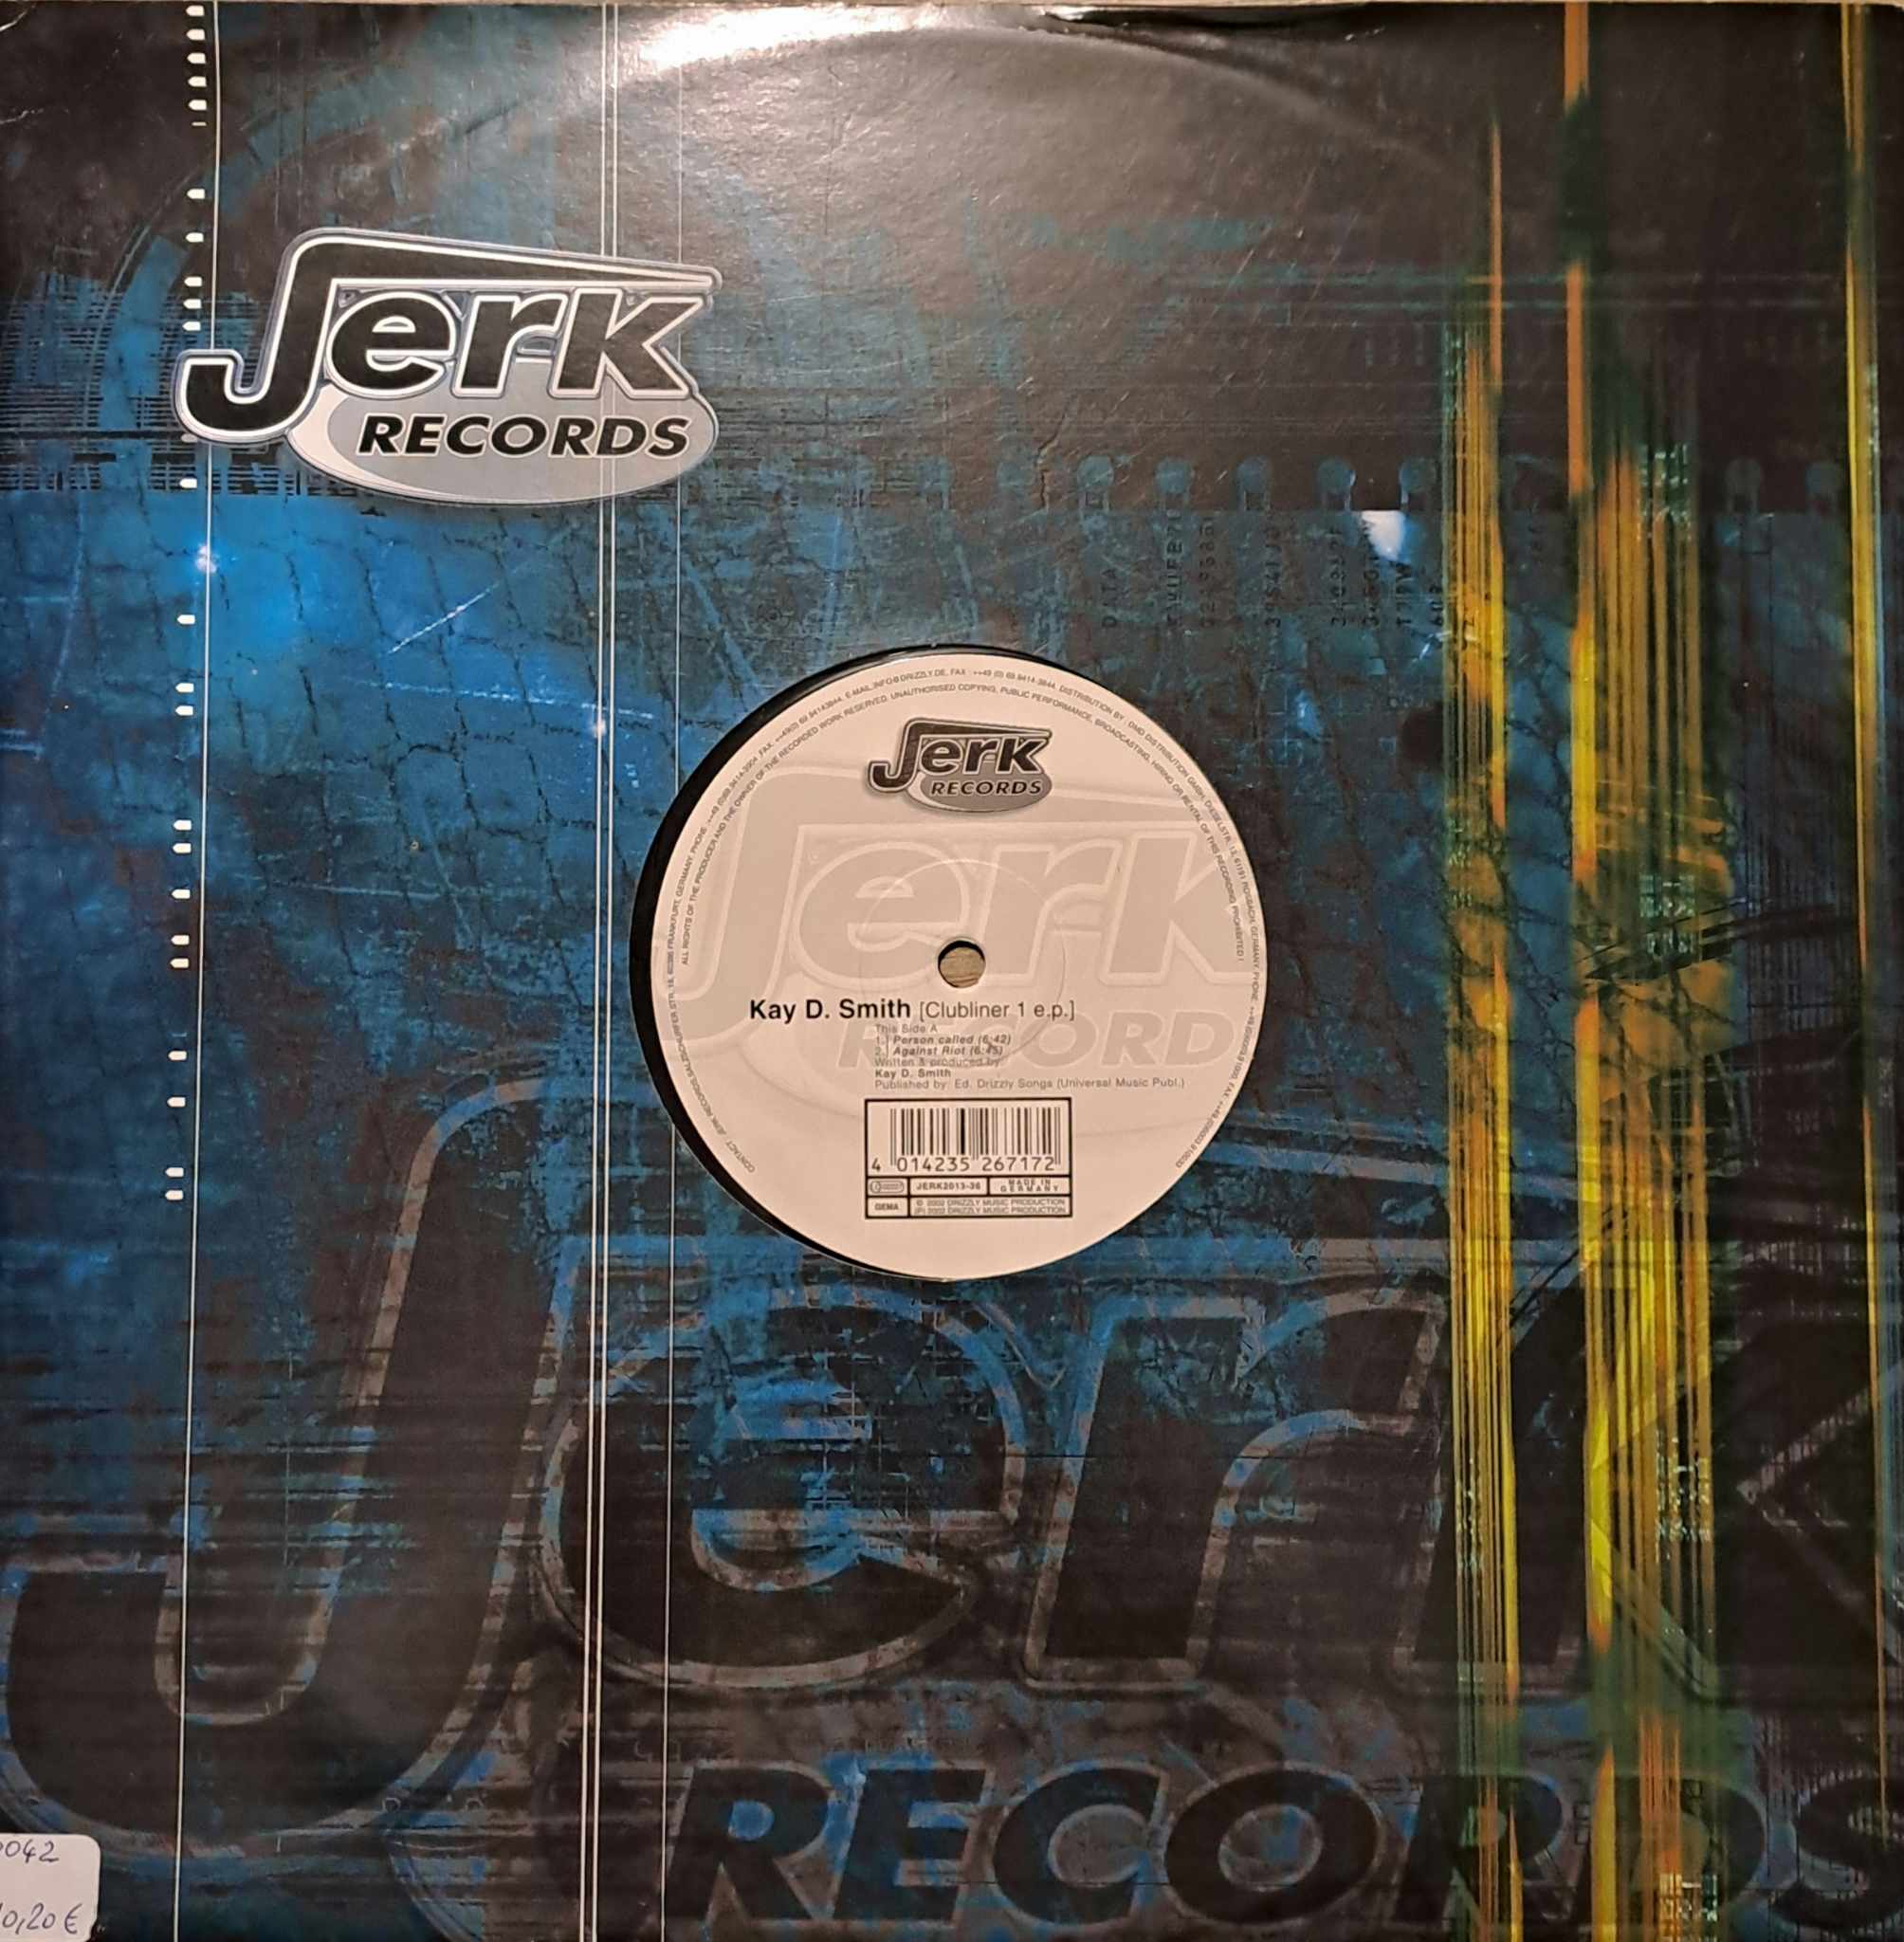 Jerk Records 2013 36 - vinyle techno